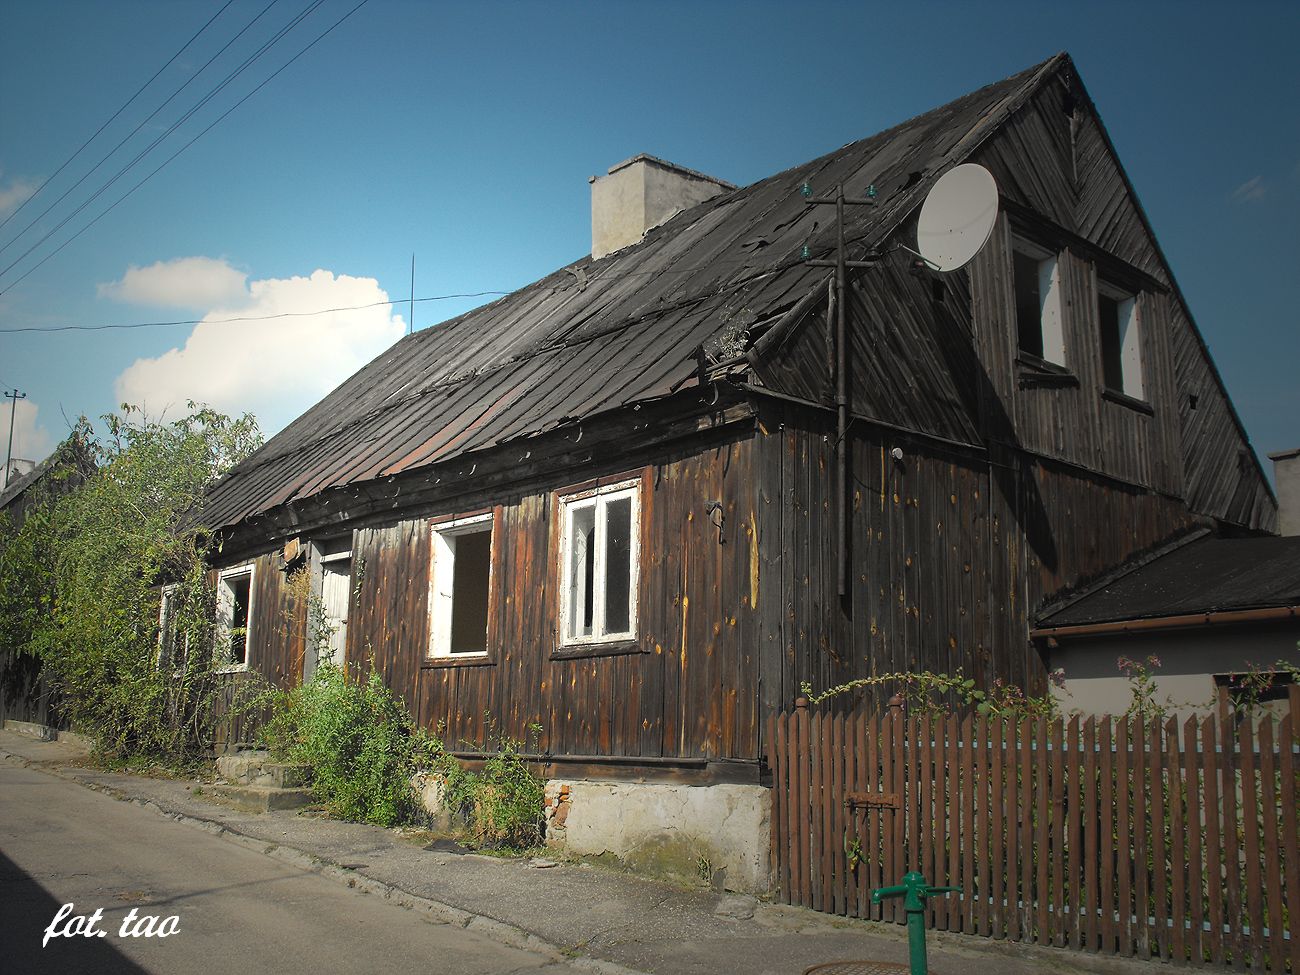 Dom przy ul. w. Wawrzyca, wrzesie 2014 r.